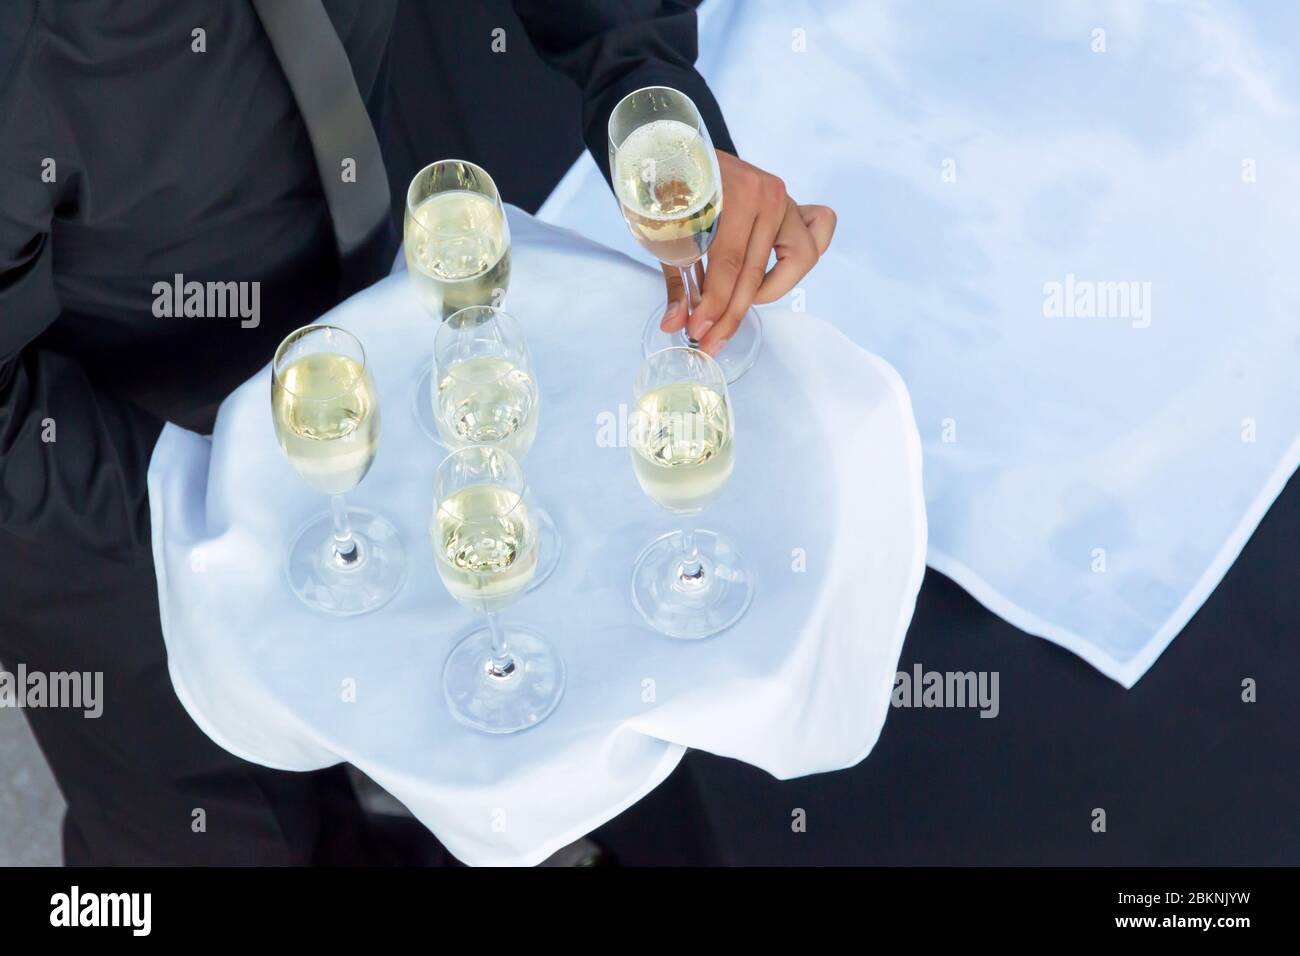 Vue de dessus d'un serveur tenant un plateau avec des verres de champagne ou de victoire blanche, traiteur boissons dans une soirée cocktail Banque D'Images